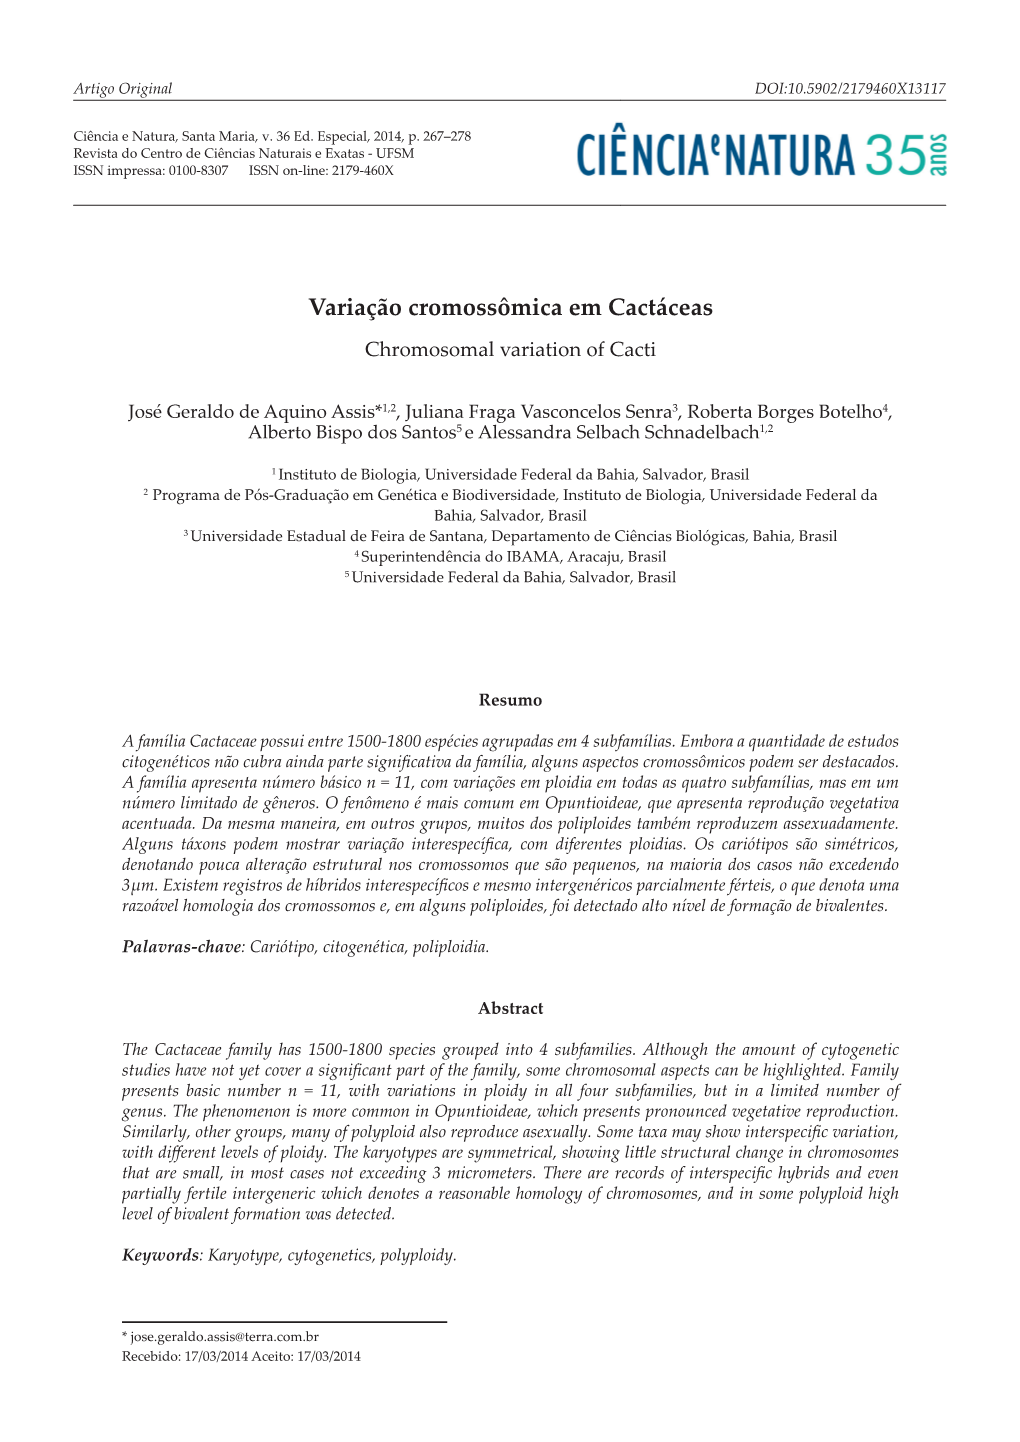 Variação Cromossômica Em Cactáceas Chromosomal Variation of Cacti